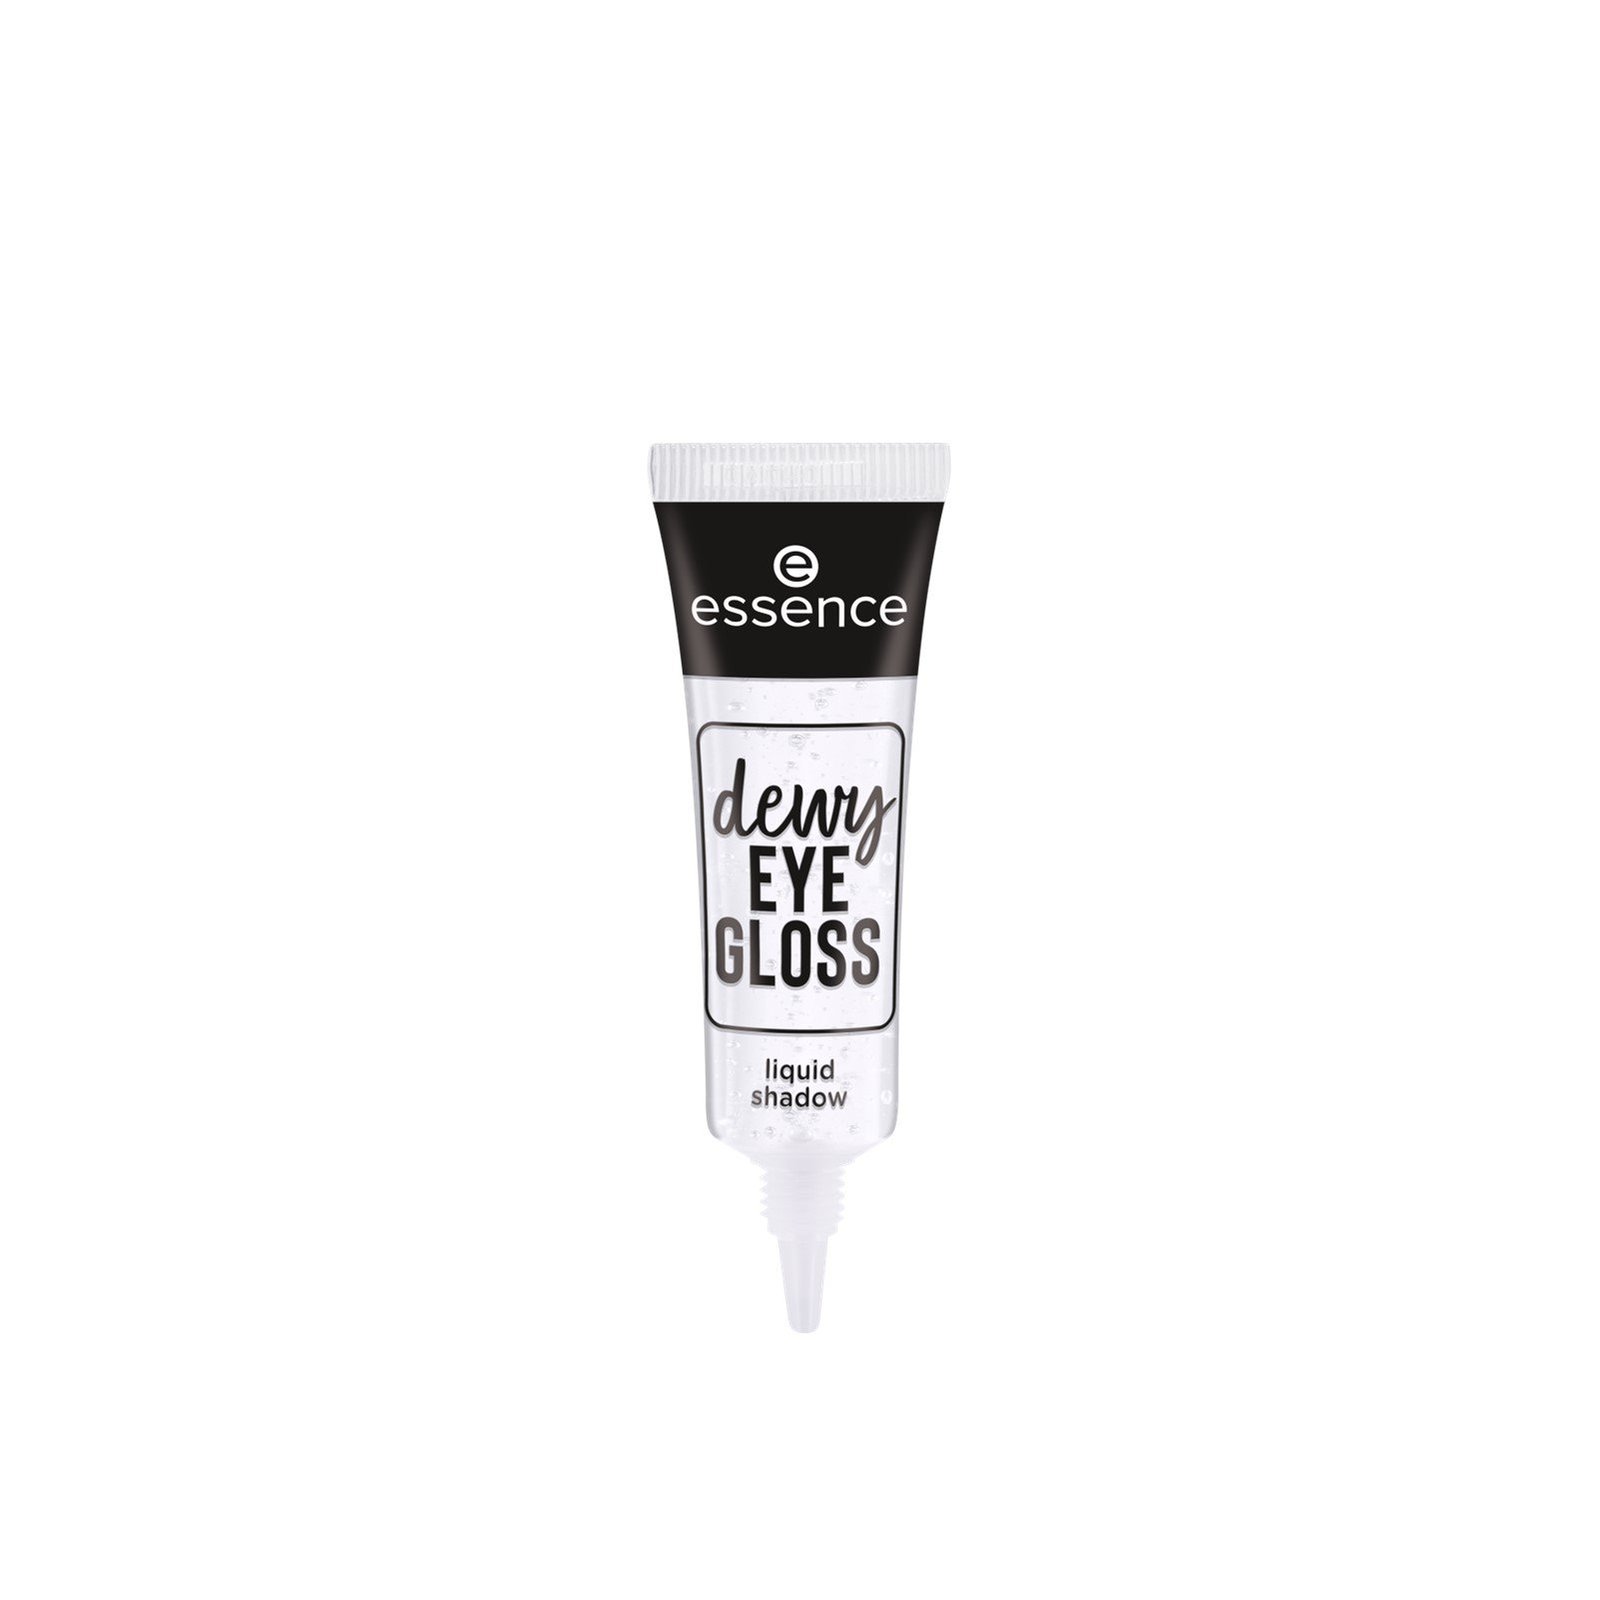 essence Dewy Eye Gloss Liquid Shadow 01 Crystal Clear 8ml